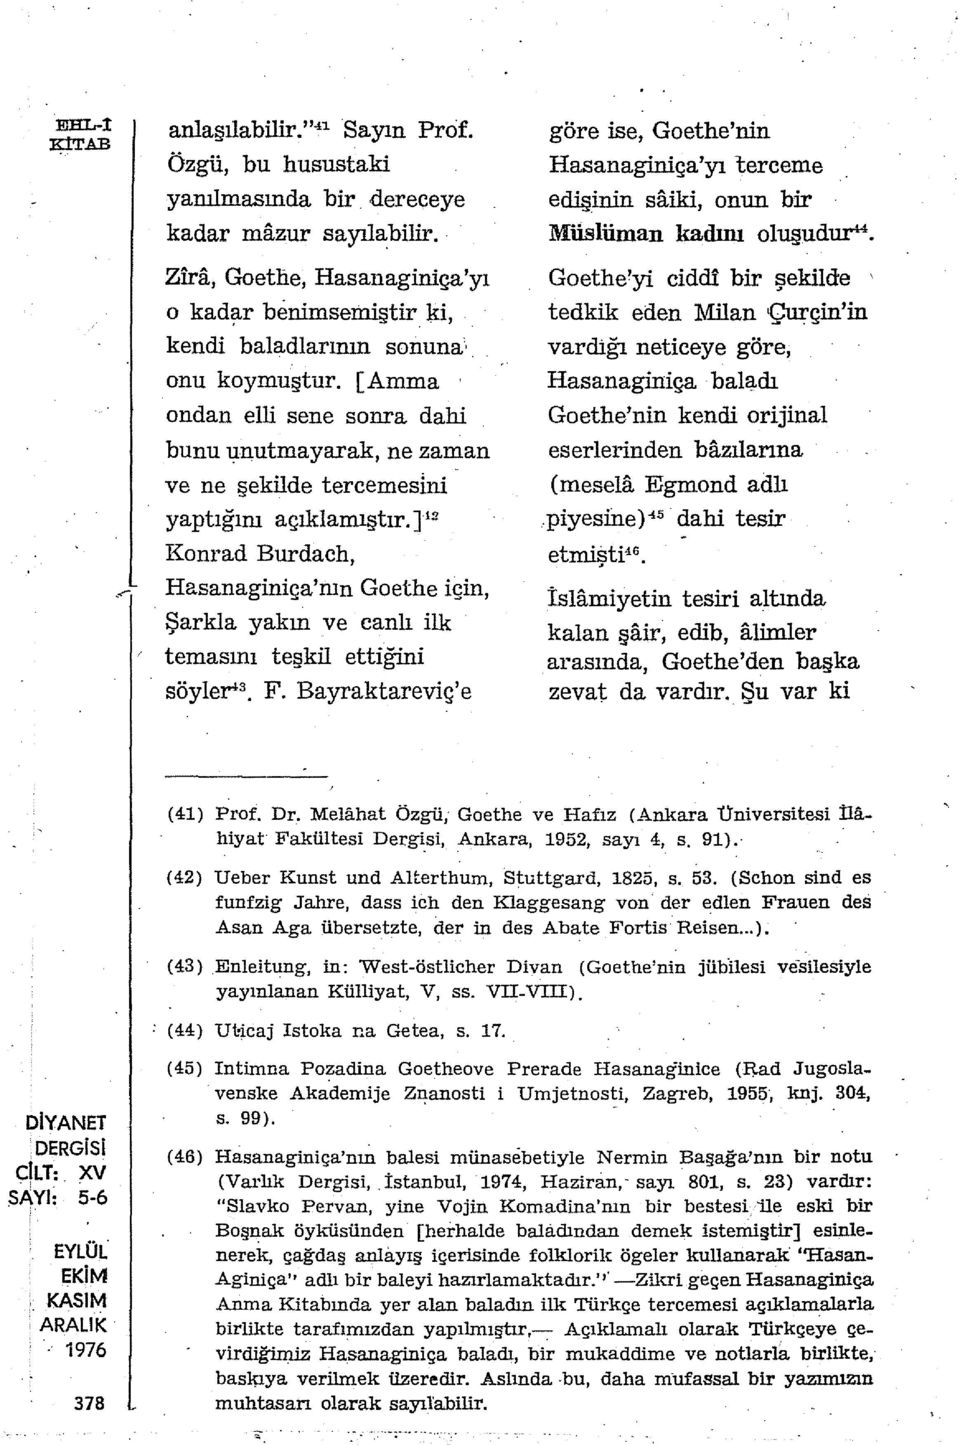 ] 12 Konrad Burdach, Hasanaginiça'nın Goethe için, Şarkla yakın ve canlı ilk temasını teşkil ettiğini söyler 3 F.